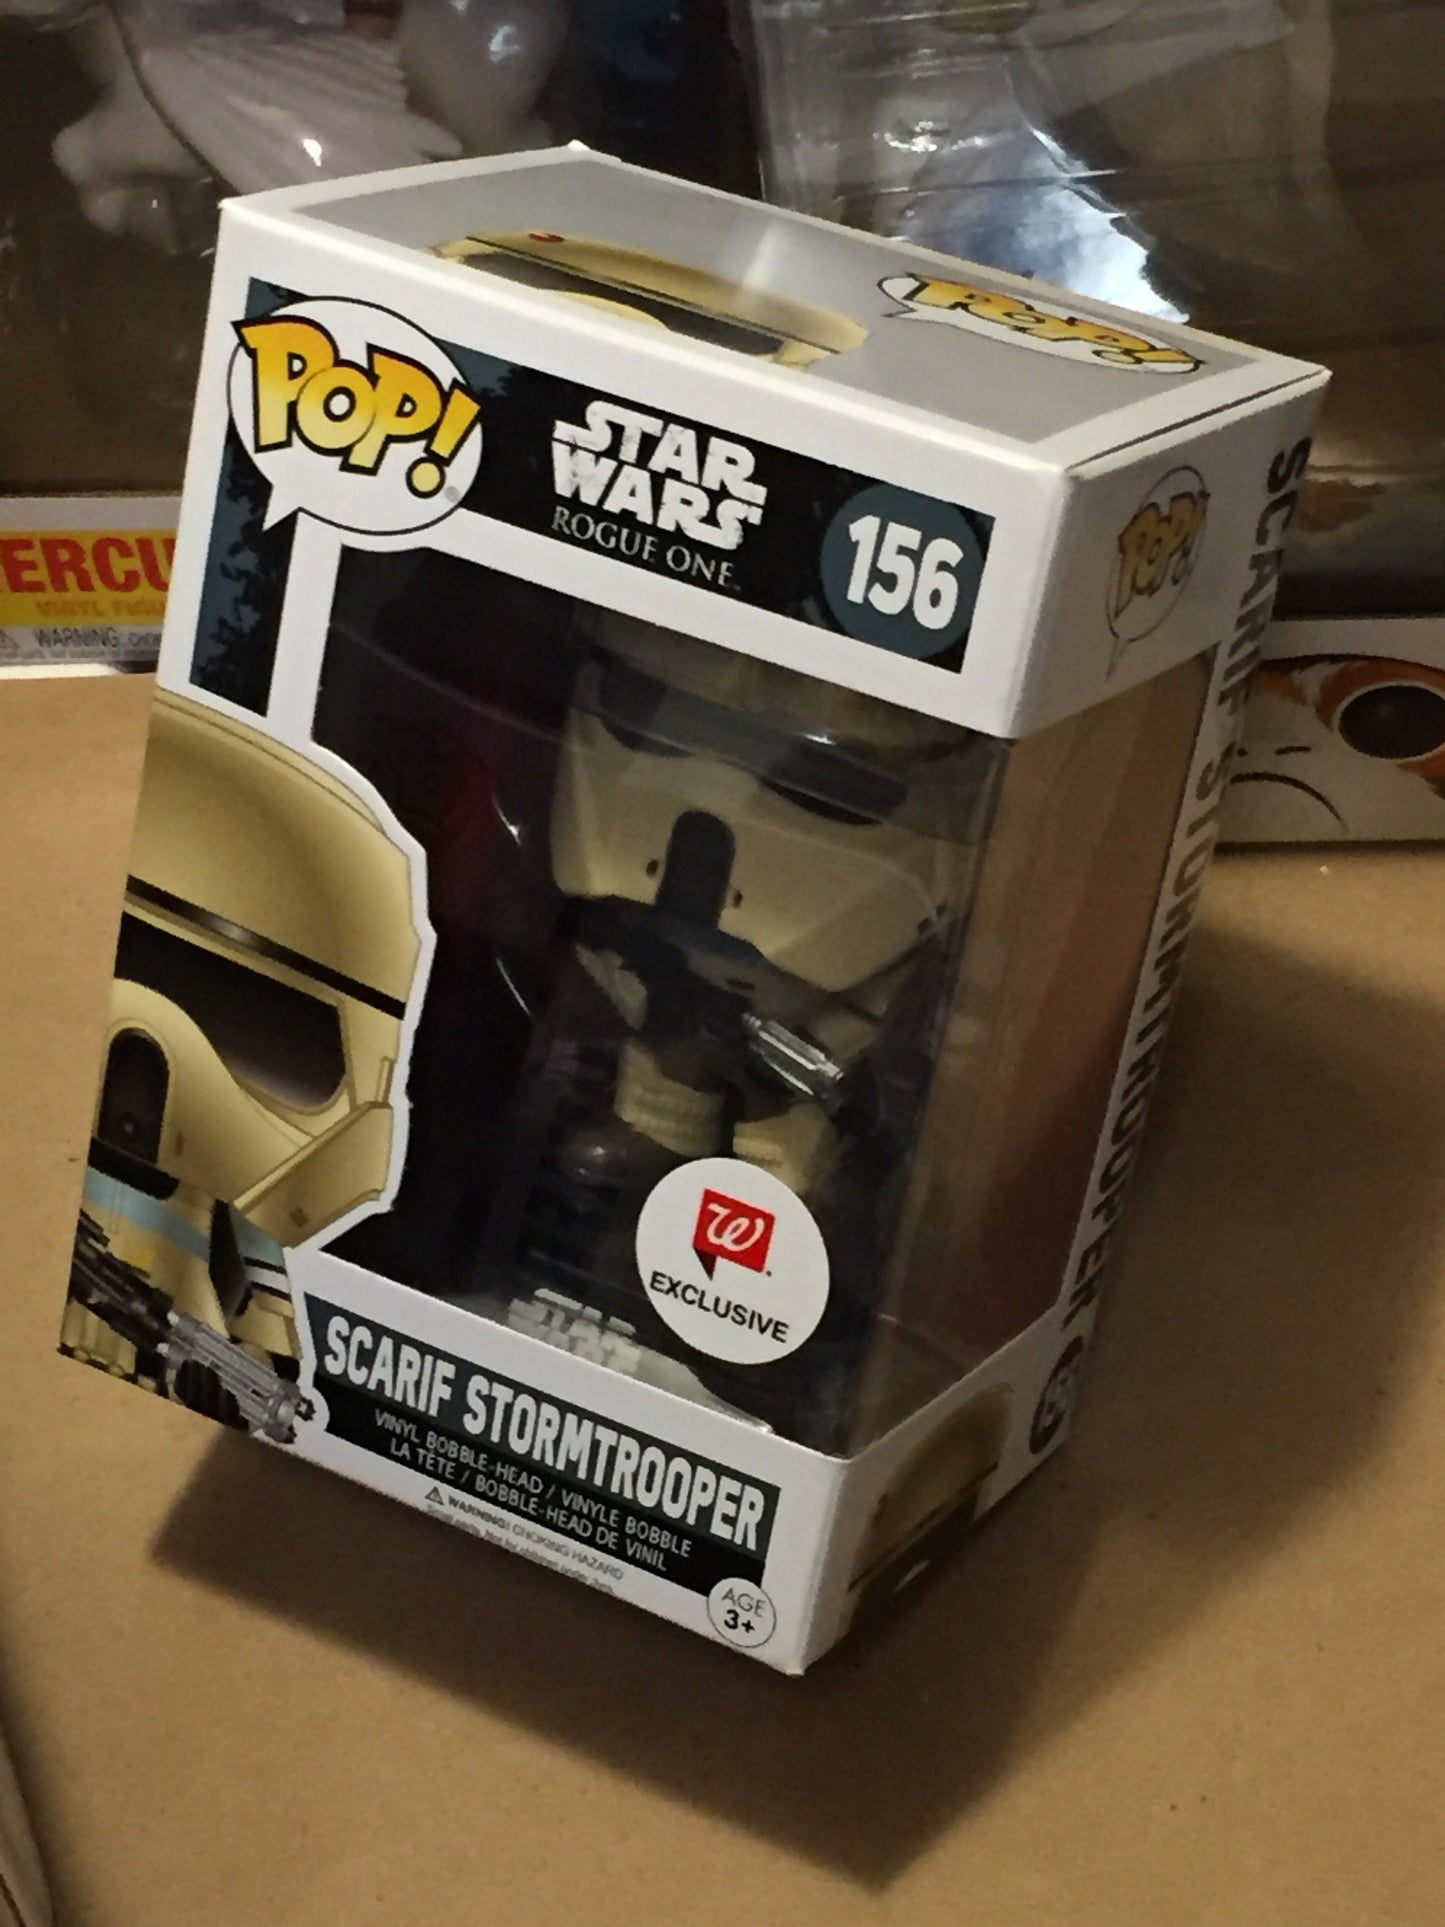 Star Wars Scarif Stormtrooper exclusive Funko Pop! Vinyl figure